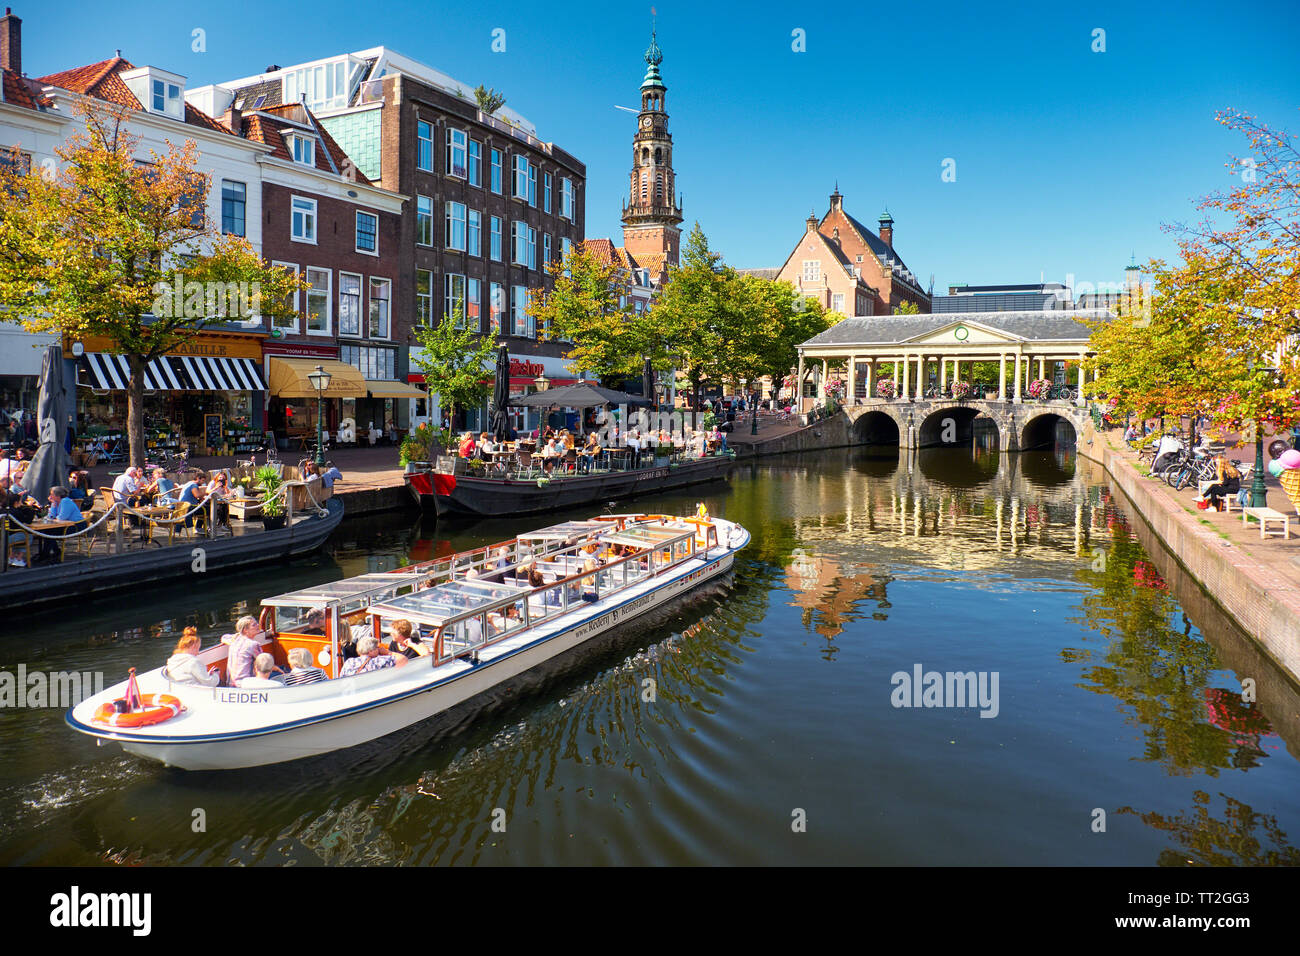 Gita in barca a vela che passa su un canale, Leiden, Paesi Bassi Foto Stock